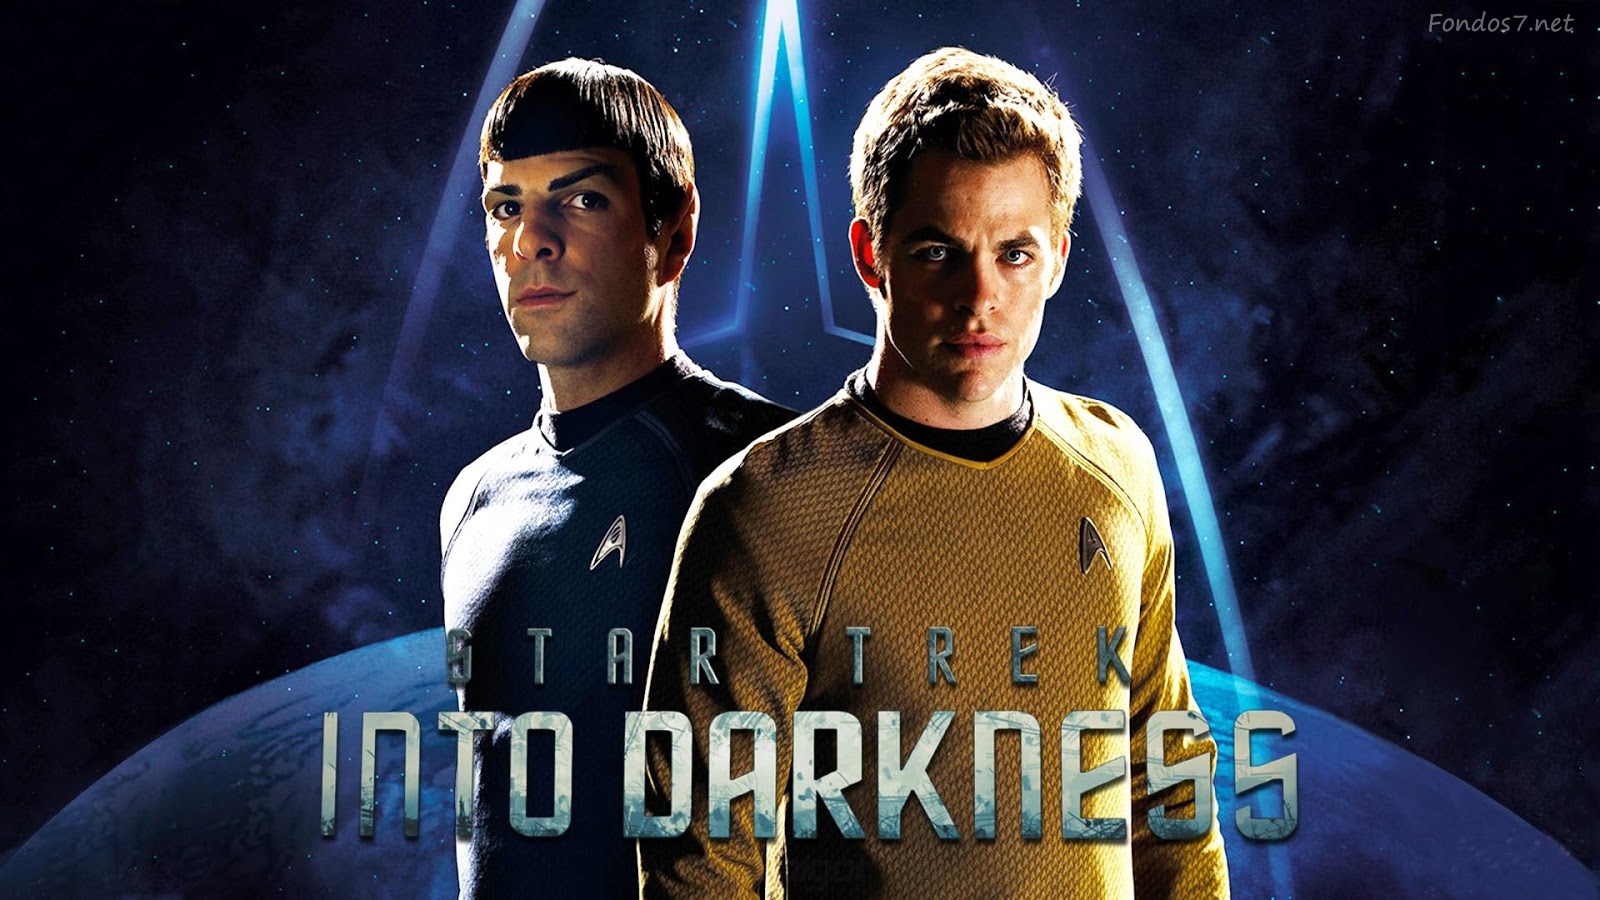 Descargar Fondos De Pantalla Spock Y Kirk HD Widescreen Gratis